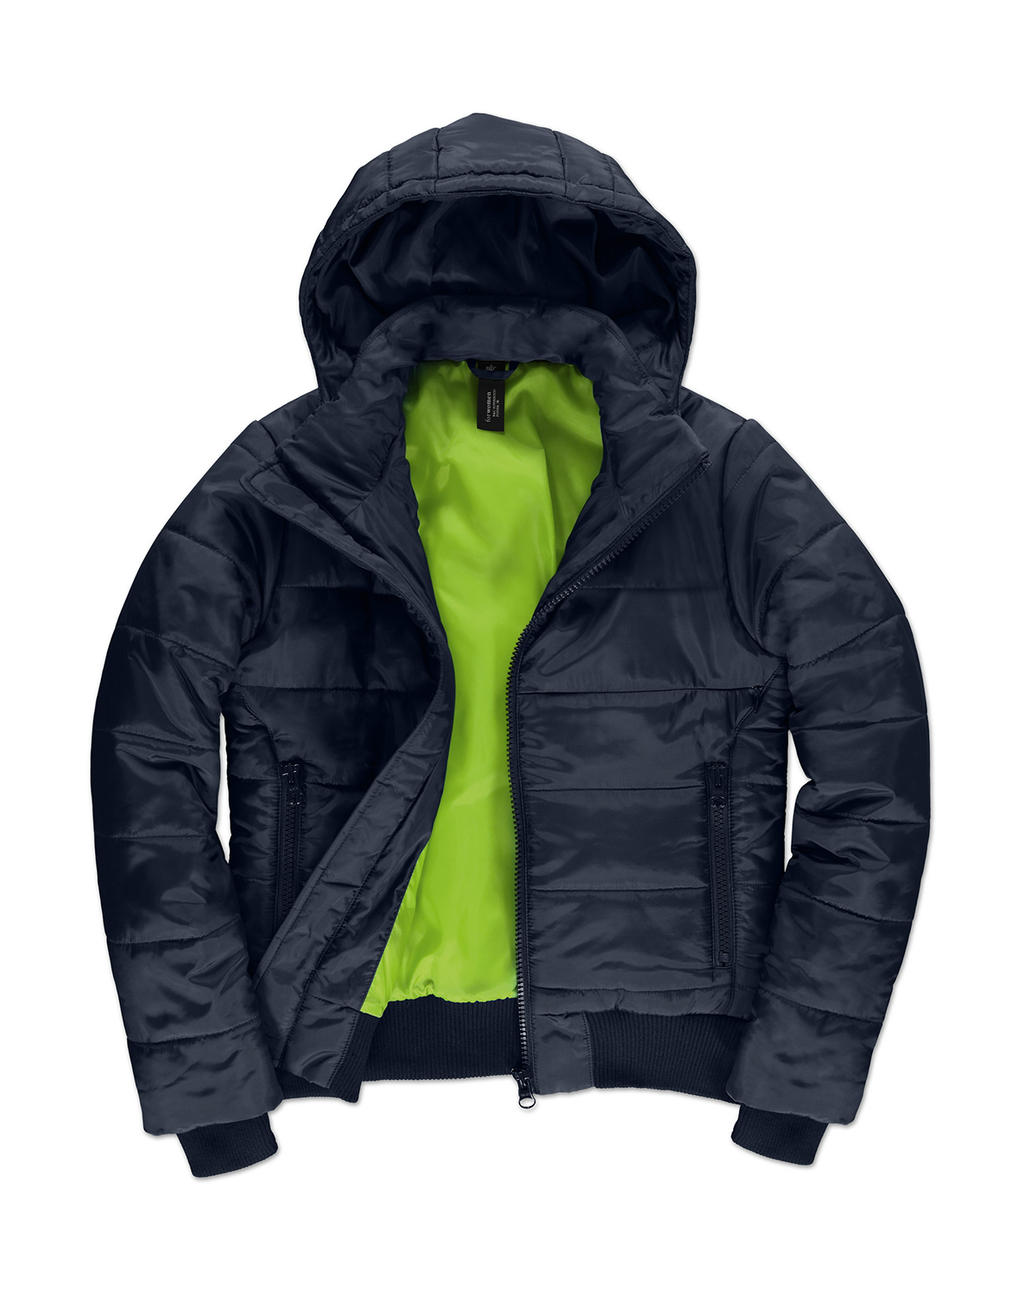  Superhood/women Jacket in Farbe Navy/Neon Green